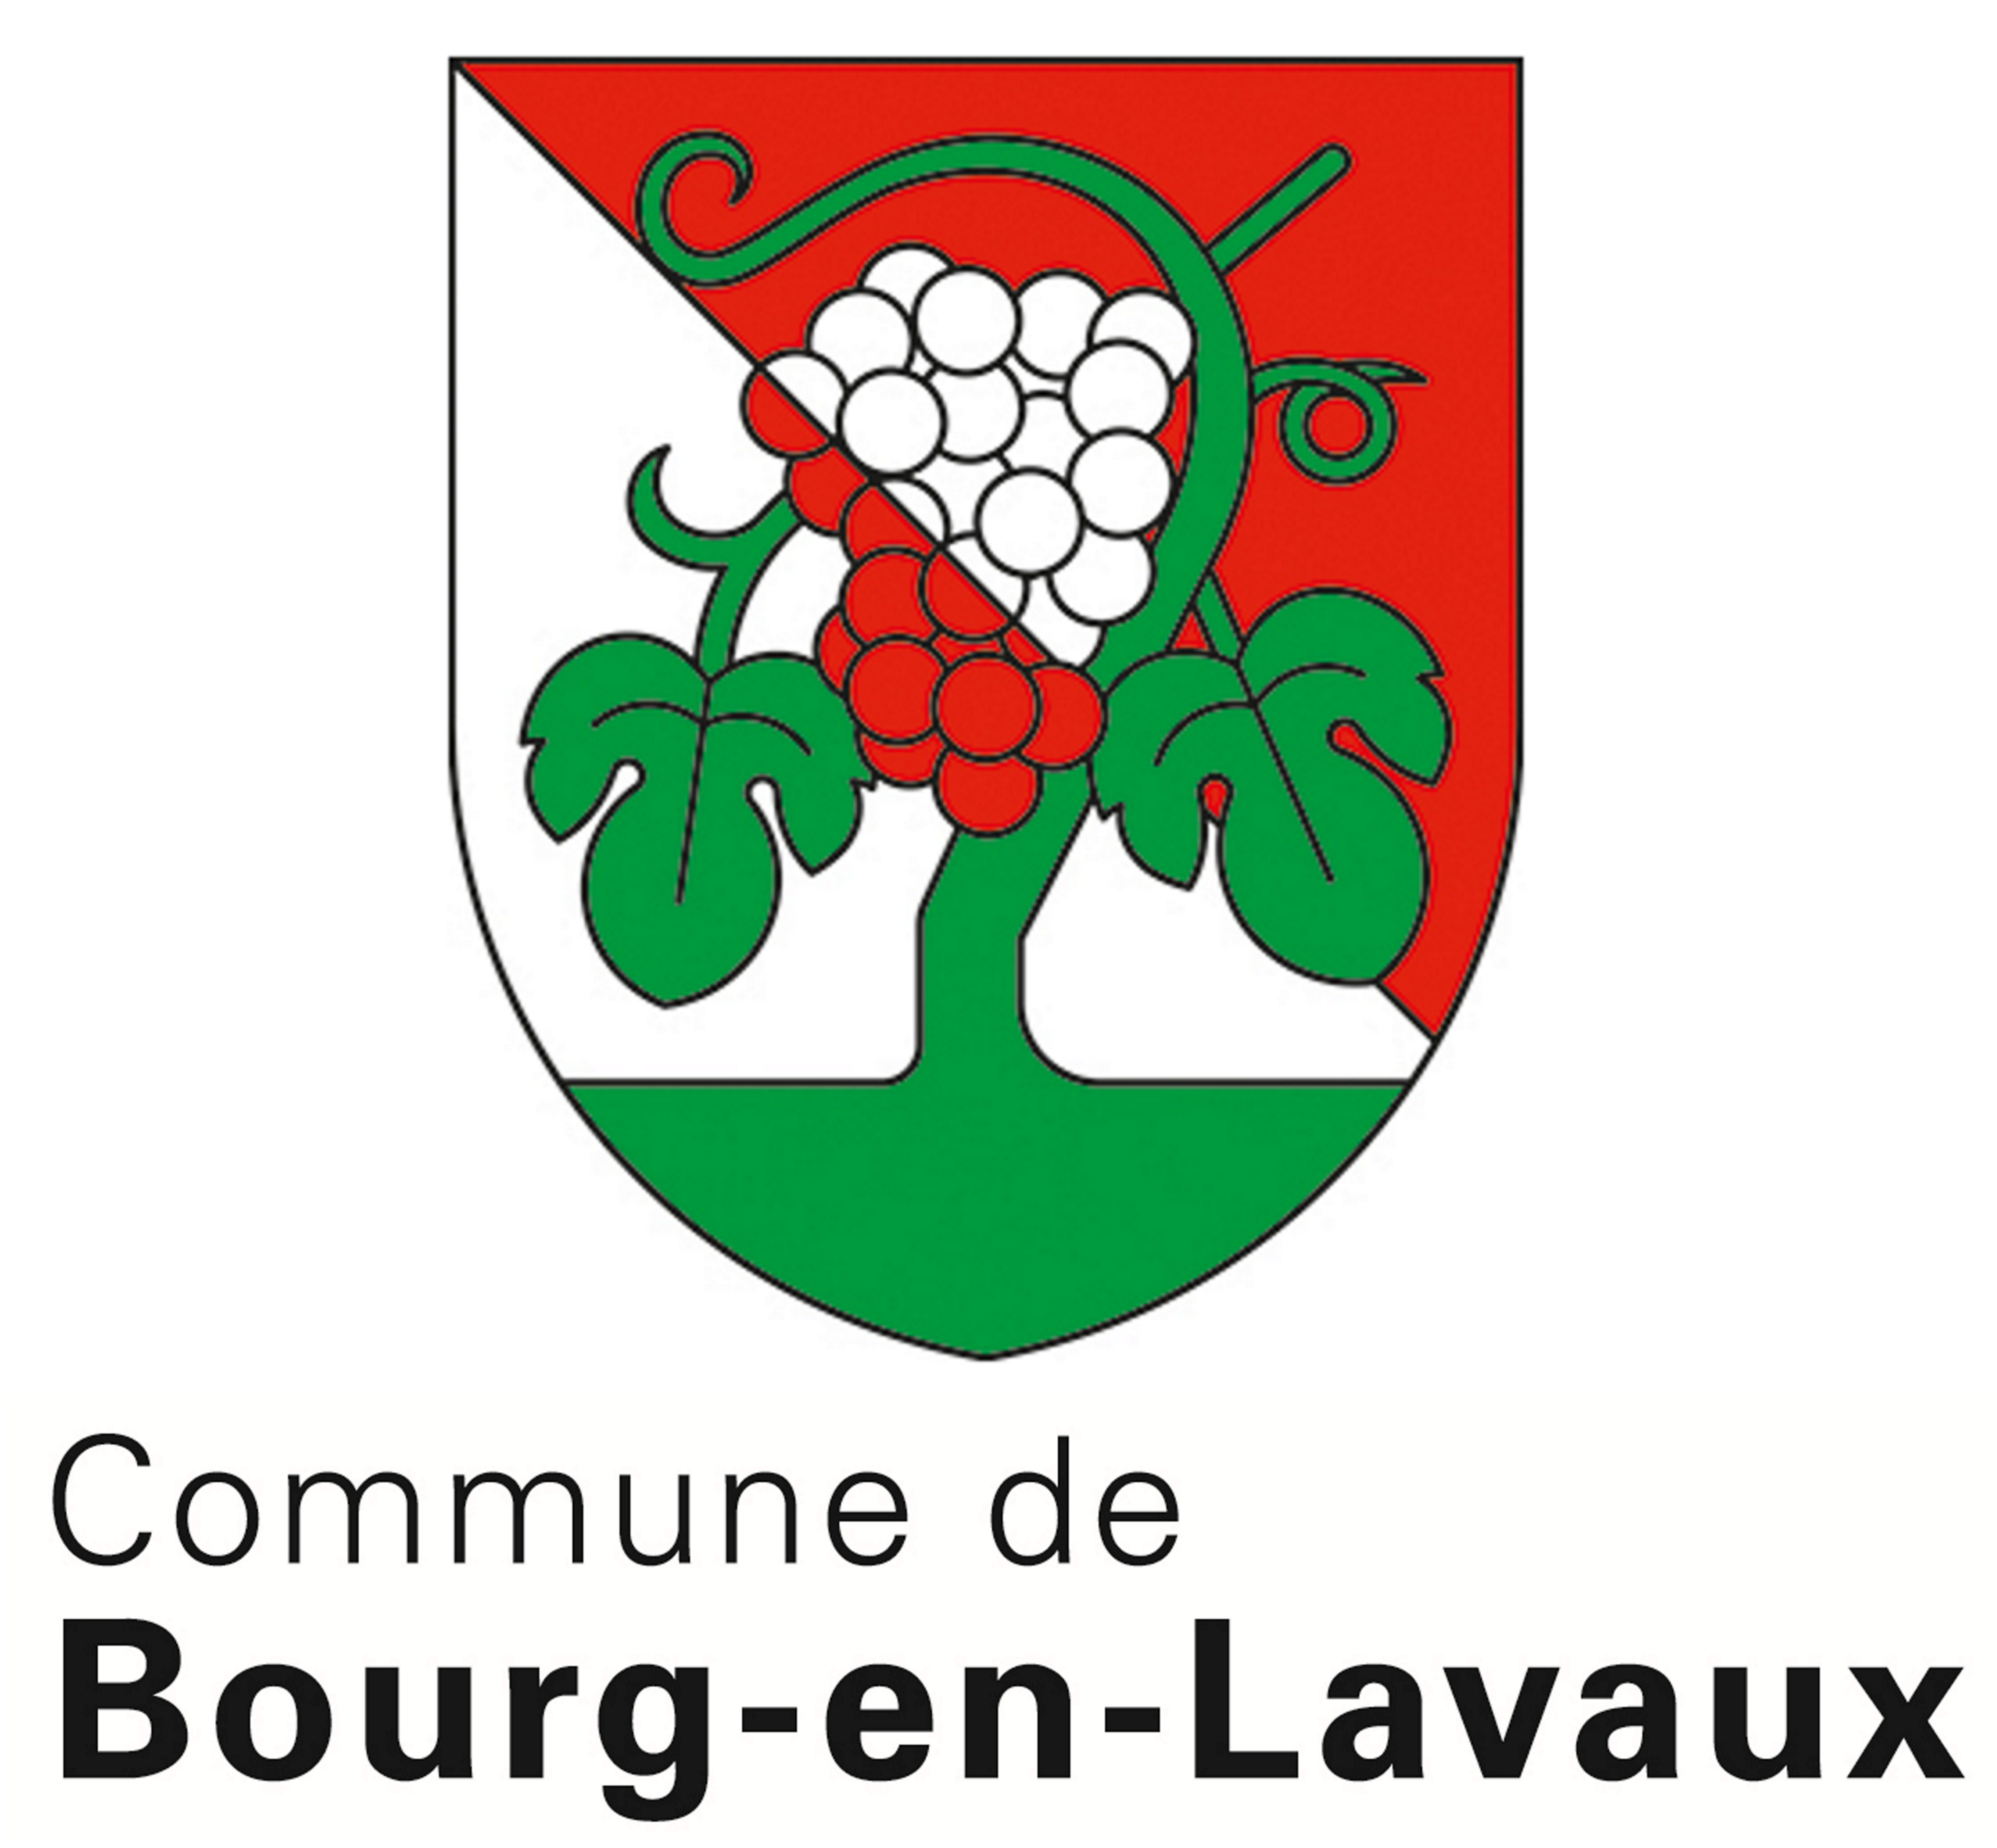 Dating Portal In Bourg-en-lavaux